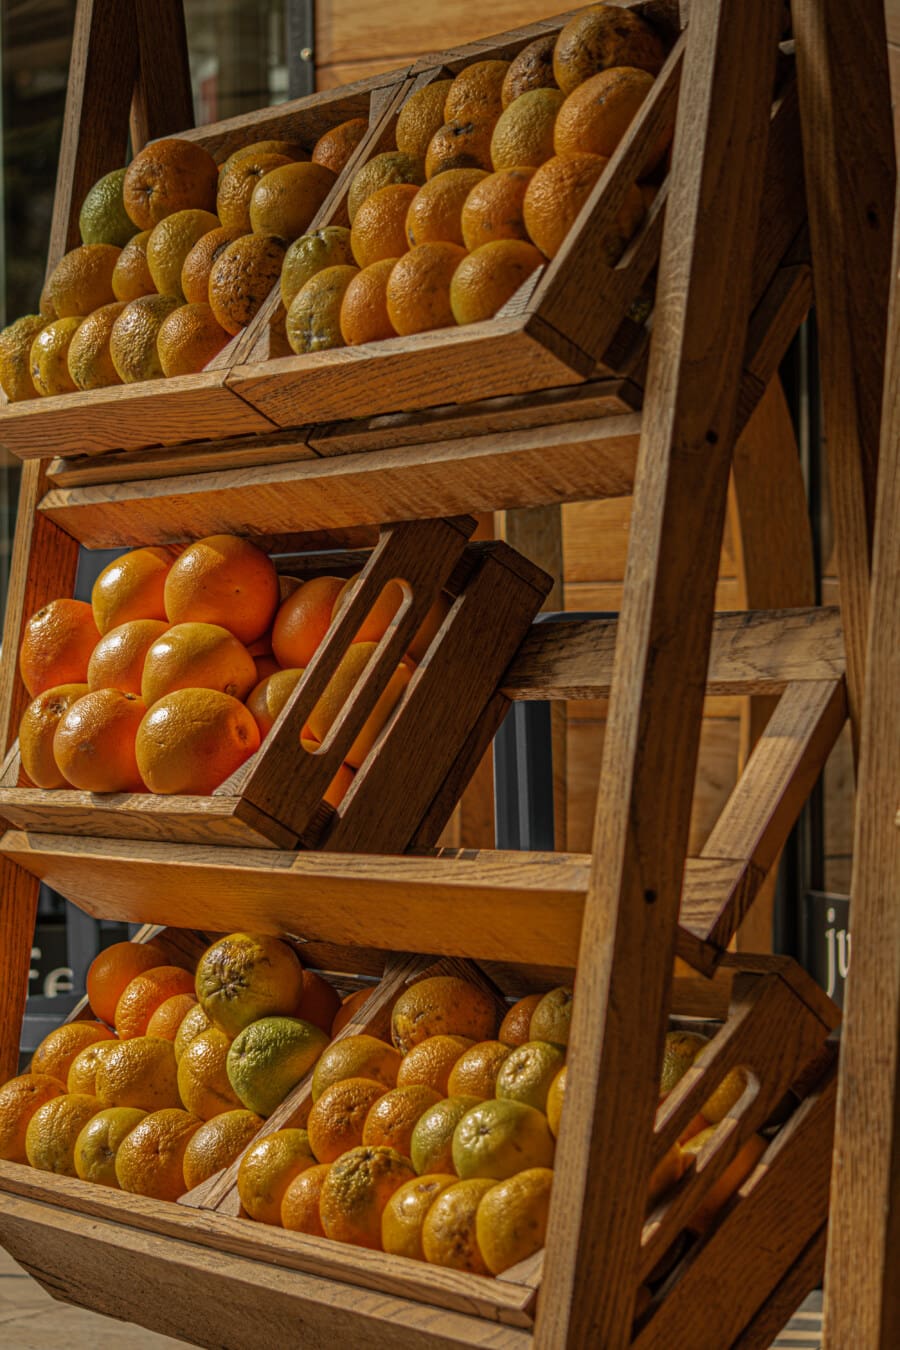 markkinat, orgaaninen, kypsä hedelmä, hedelmät, appelsiininkuori, appelsiinit, hylly, puinen, Stall, sitrushedelmien